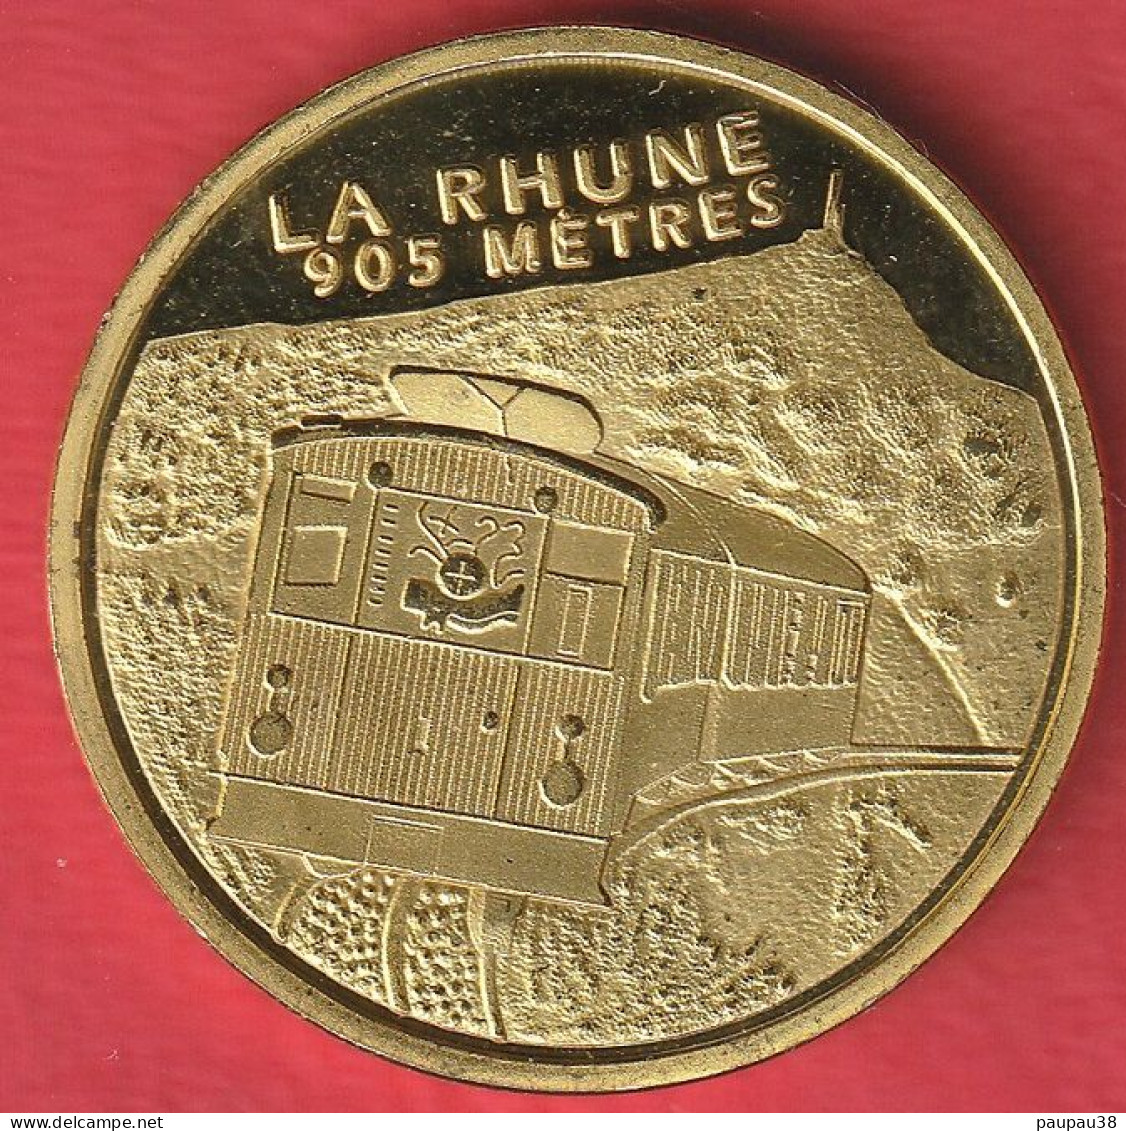 N° 1 SOUVENIR ET PATRIMOINE PAYS BASQUE - LE TRAIN DE LA RHUNE 905m - Ohne Datum